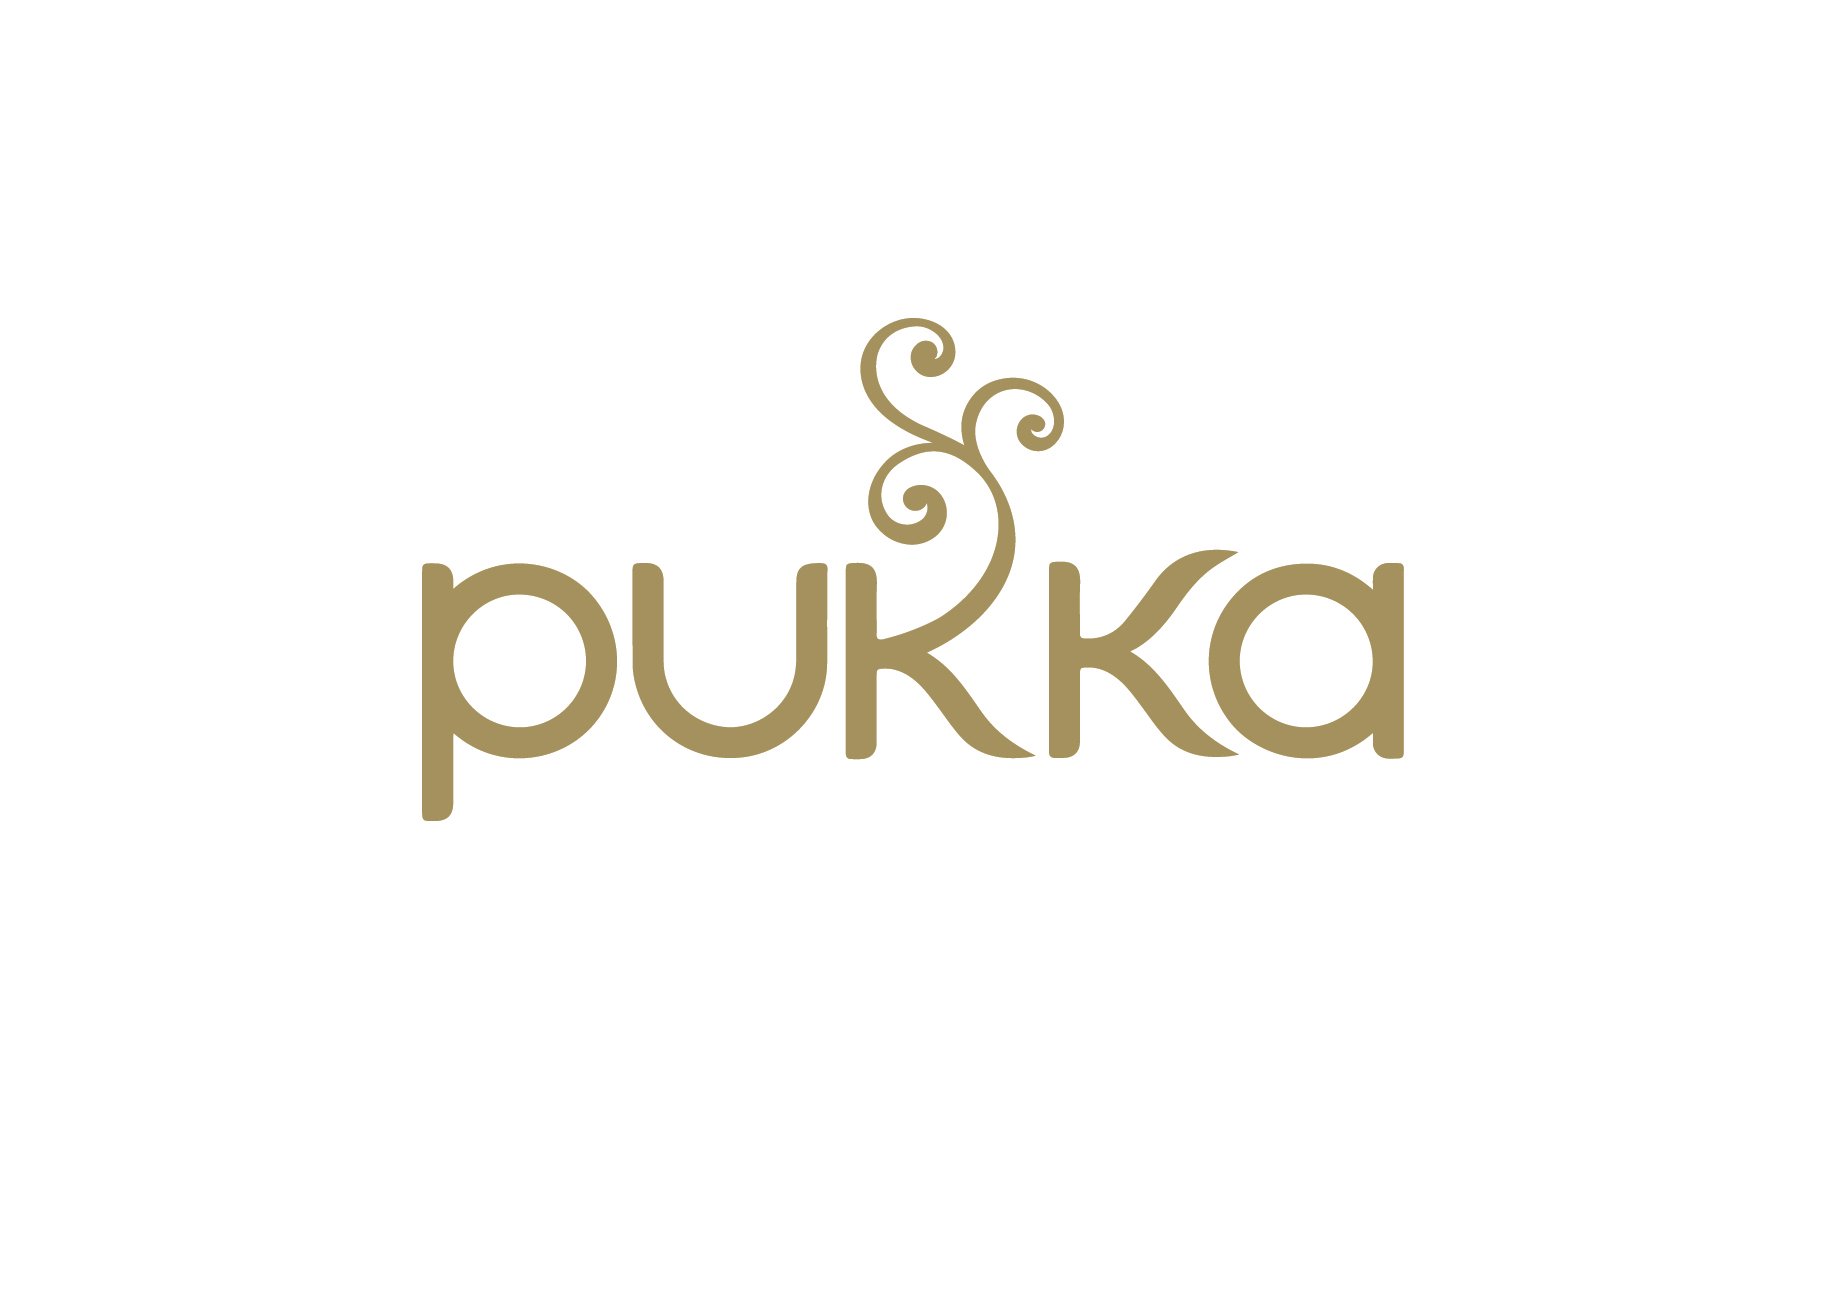 17675_Pukka Logos - CMYK_Gold.jpg